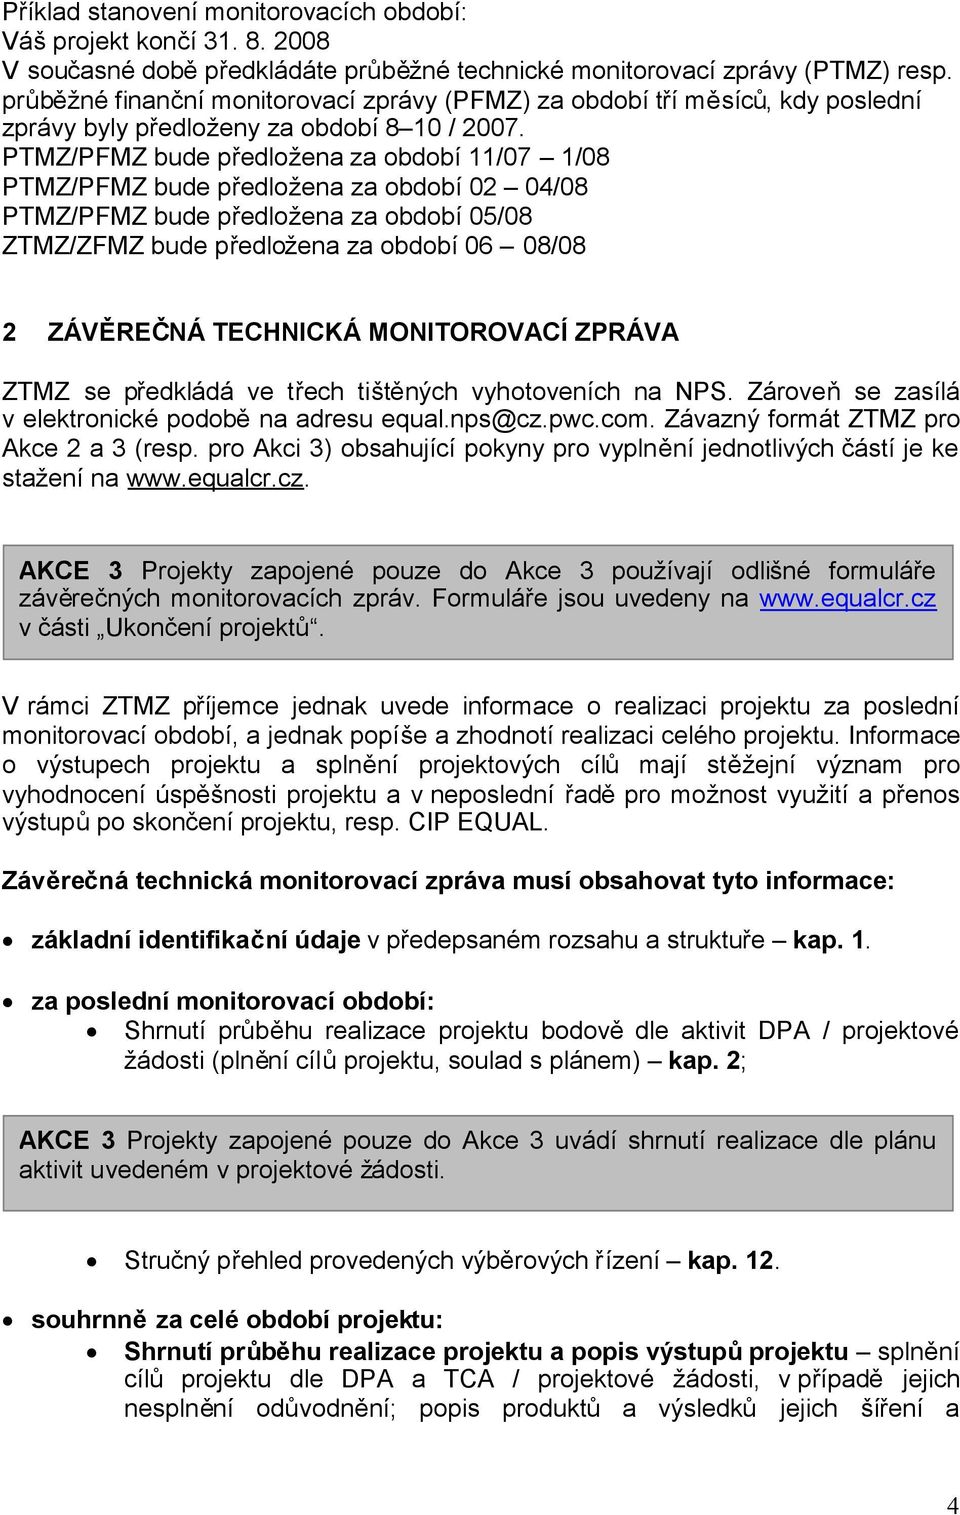 PTMZ/PFMZ bude předložena za období 11/07 1/08 PTMZ/PFMZ bude předložena za období 02 04/08 PTMZ/PFMZ bude předložena za období 05/08 ZTMZ/ZFMZ bude předložena za období 06 08/08 2 ZÁVĚREČNÁ